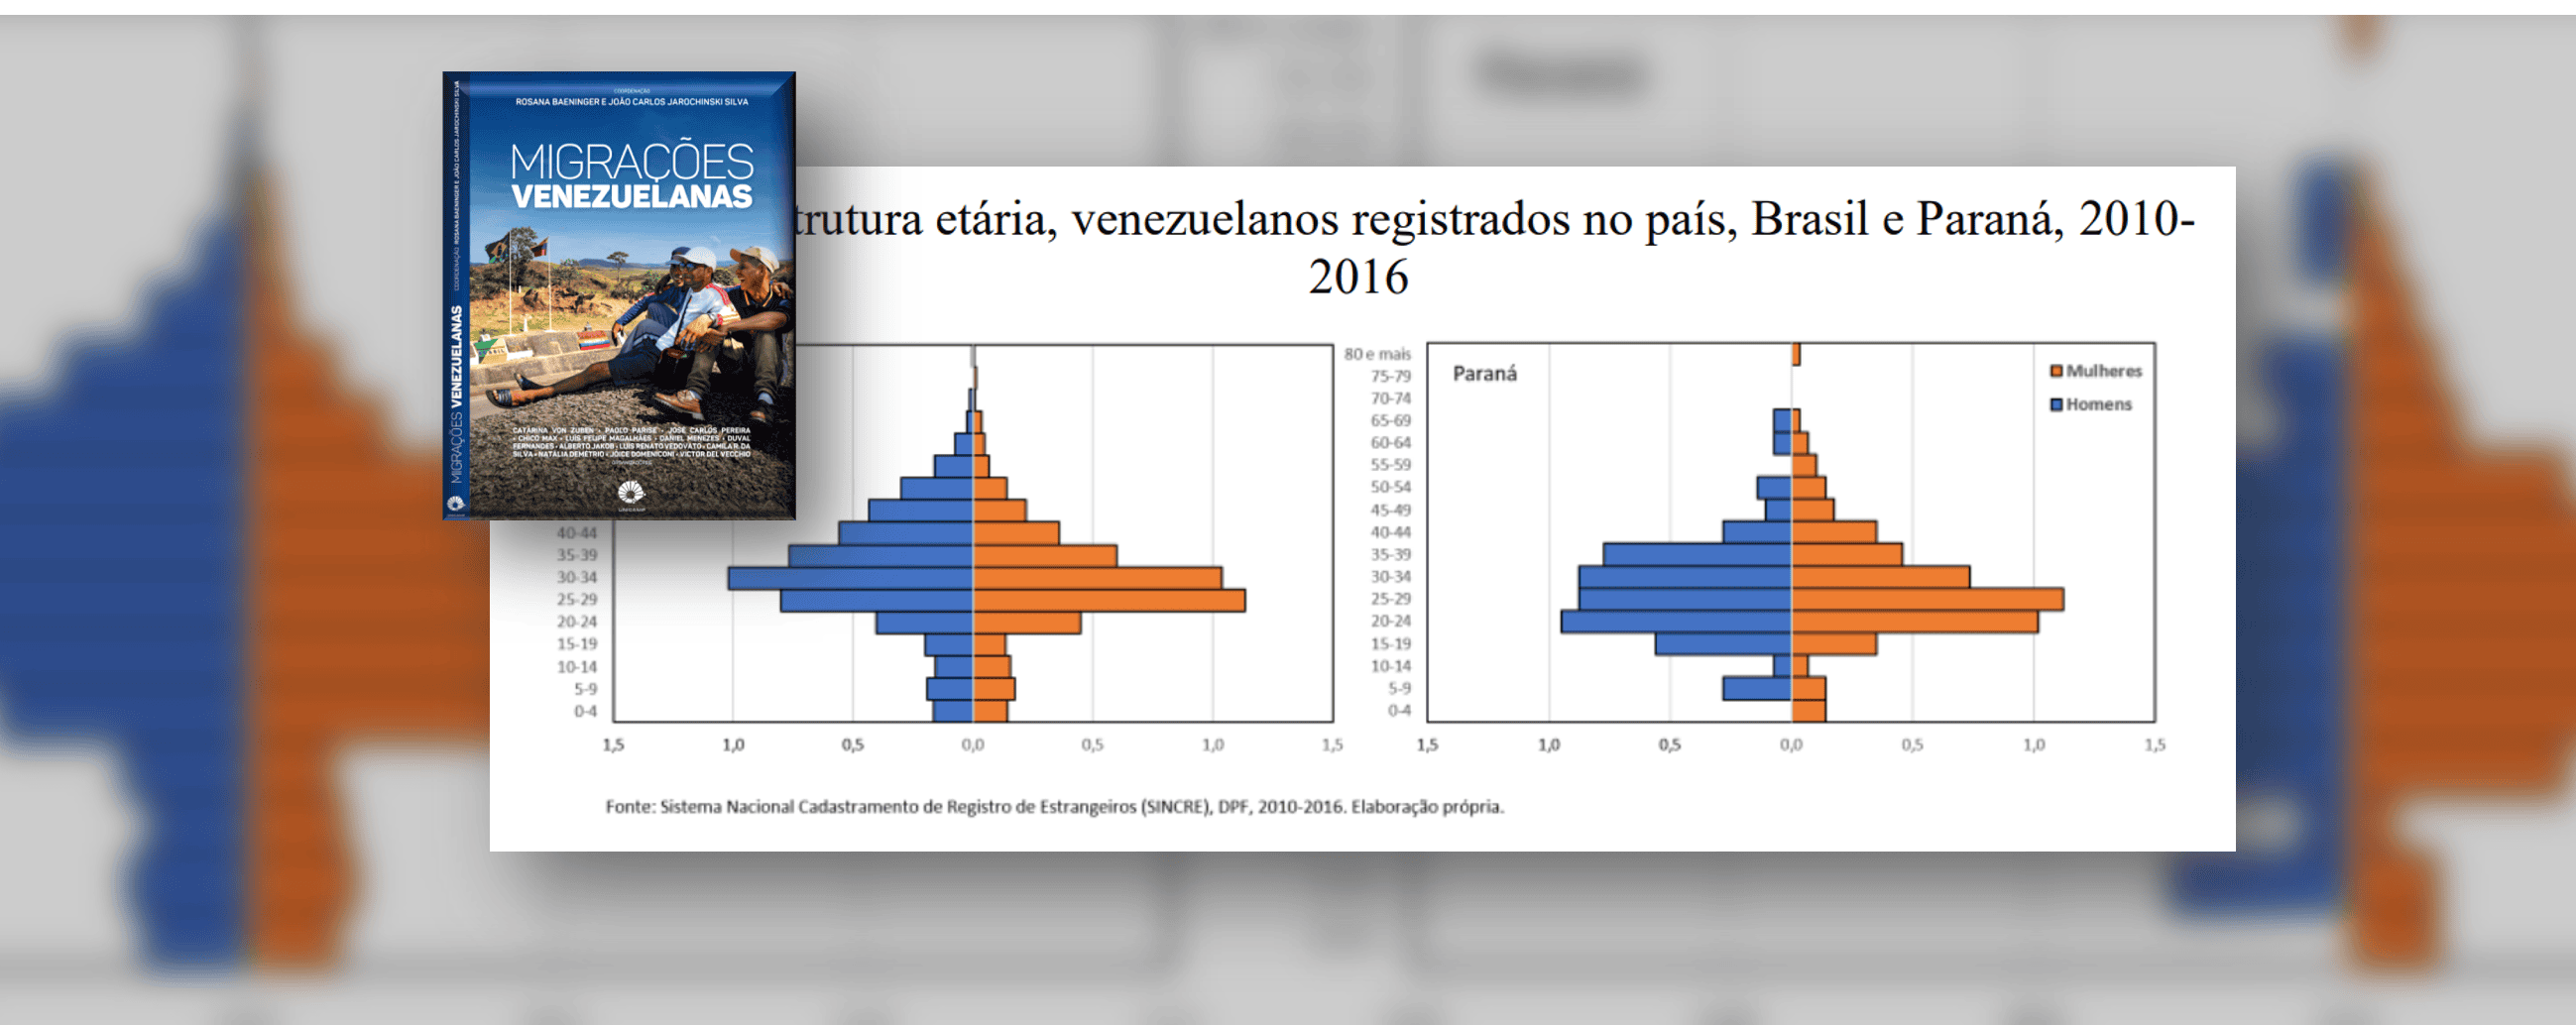 Capa do livro Migrações Venezuelanas e gráfico com a estrutura etária no Brasil, Paraná, 2010 a 2016